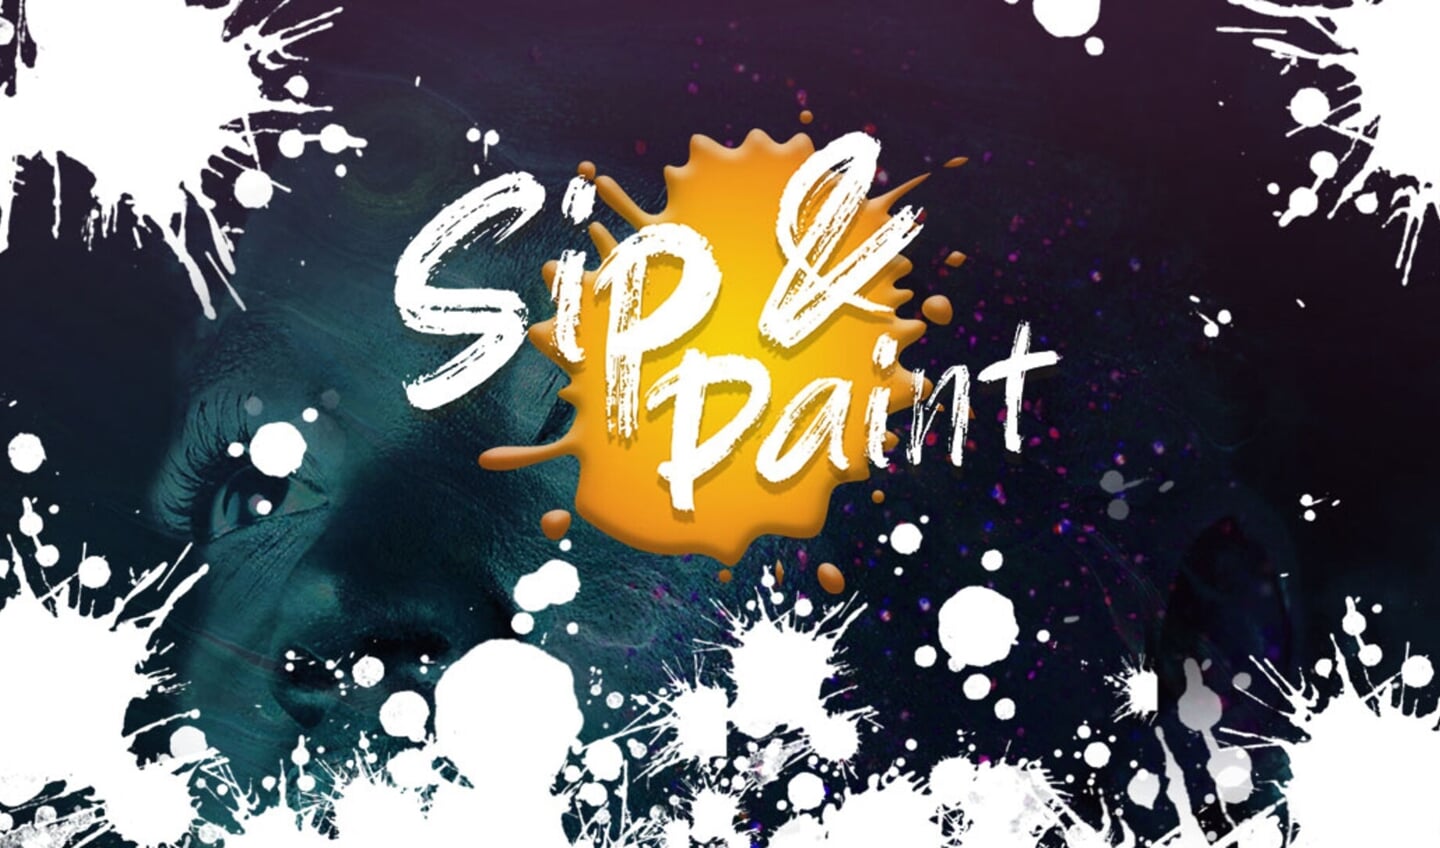 Sip & Paint